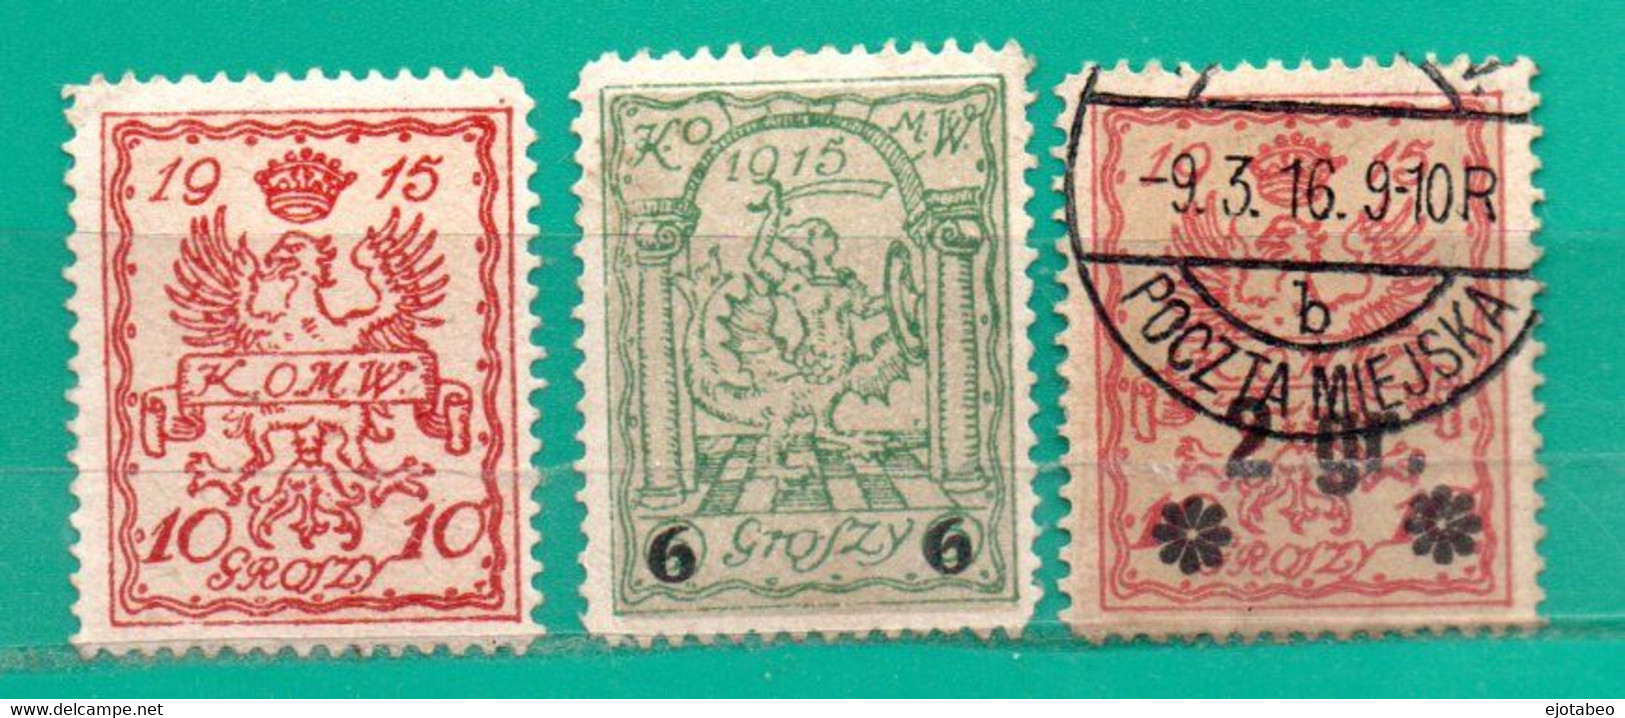 43 Polonia 1915 Correo Local De Varsovia-Yvert Servicio Interior 3 Y 8 Mint,12 Usado - Unused Stamps